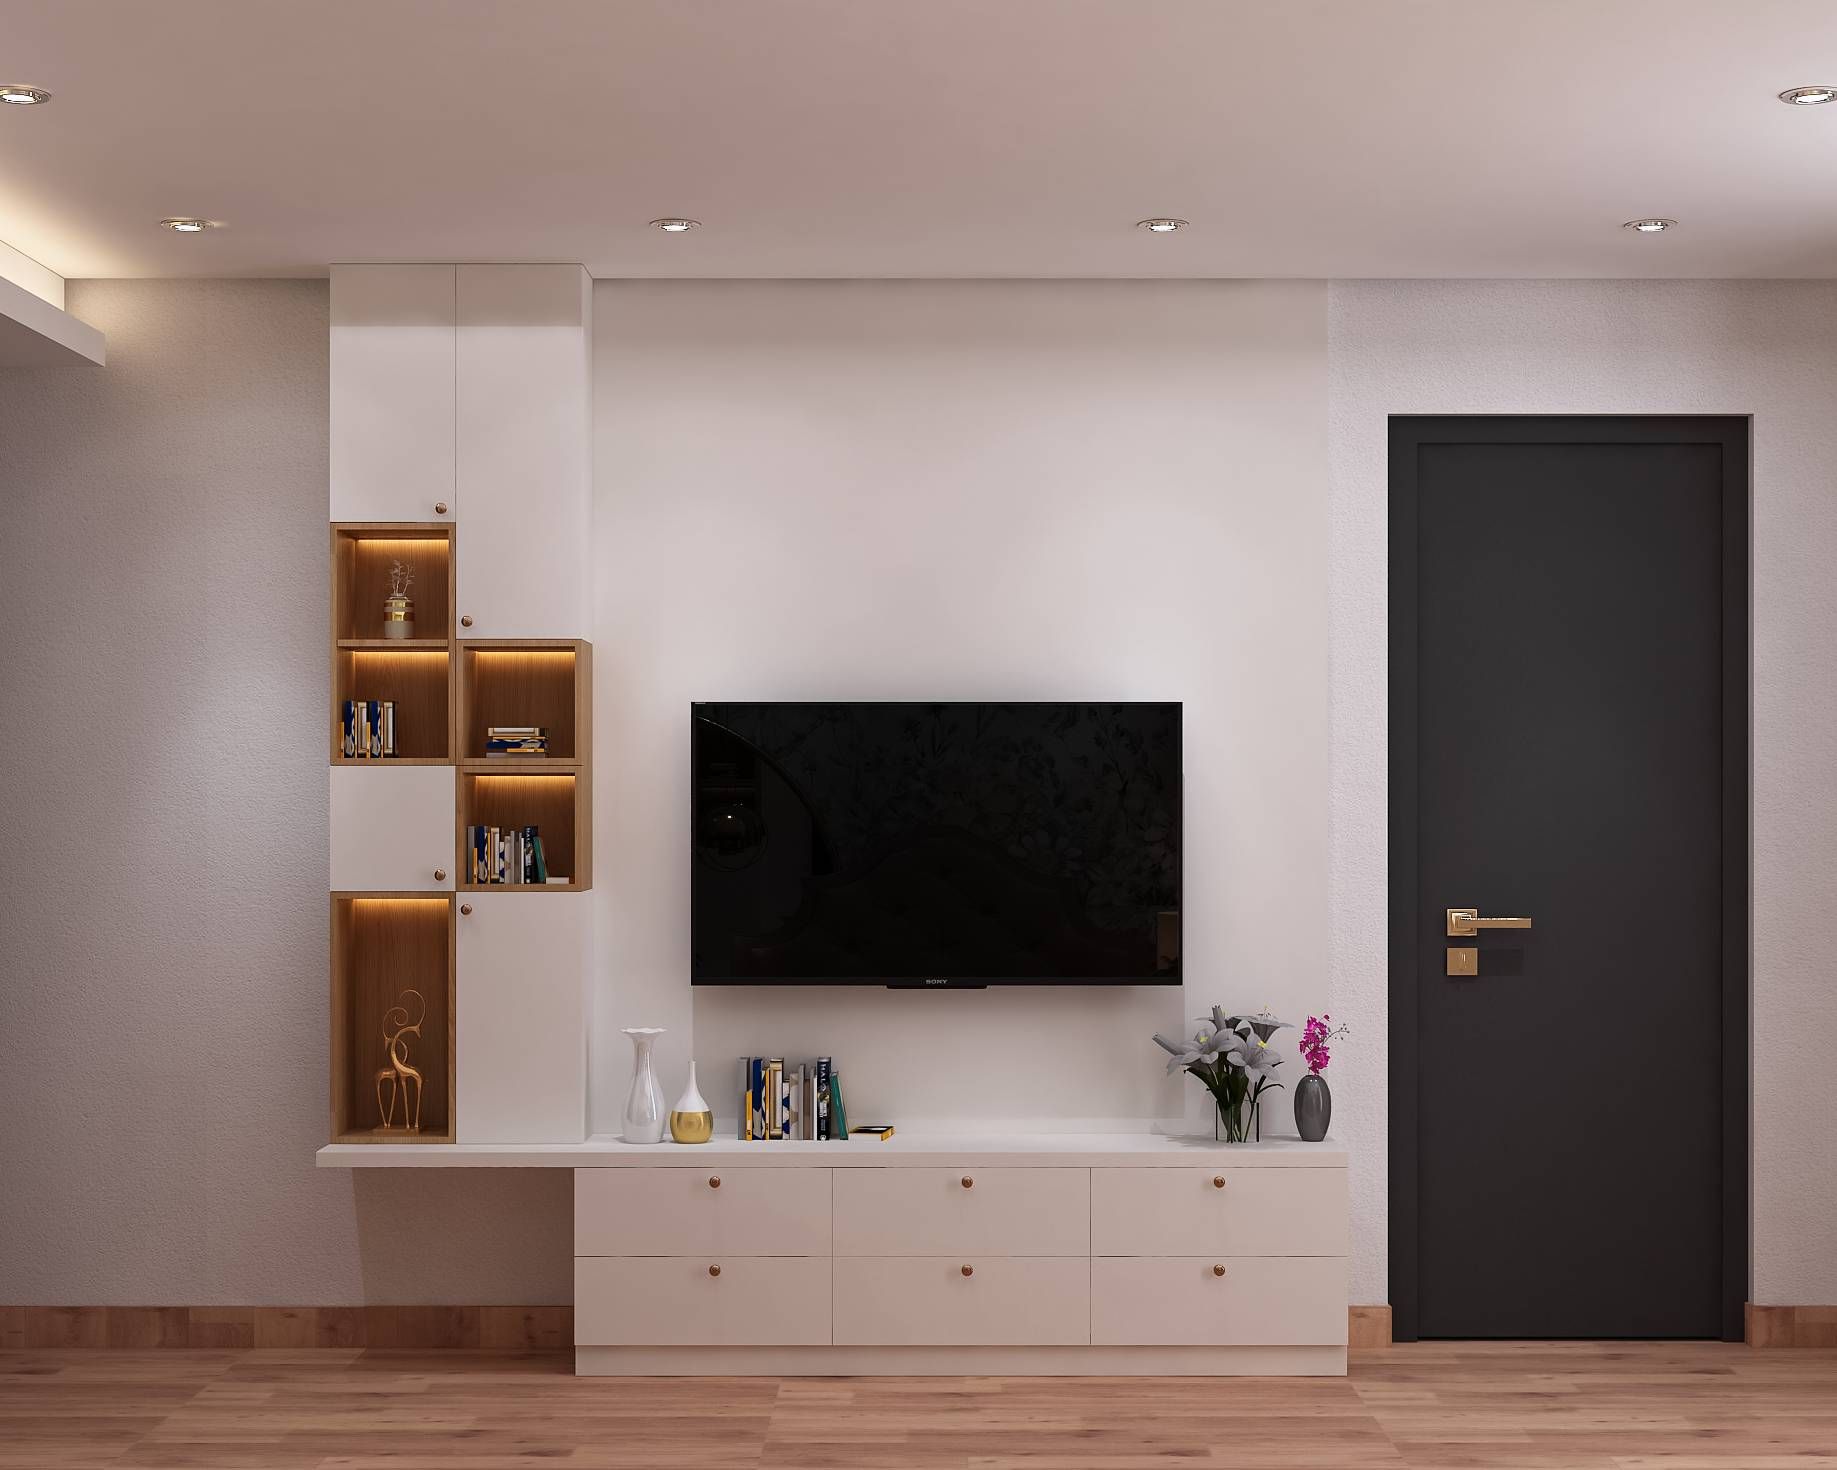 Modern White TV Unit Design With Open Shelves